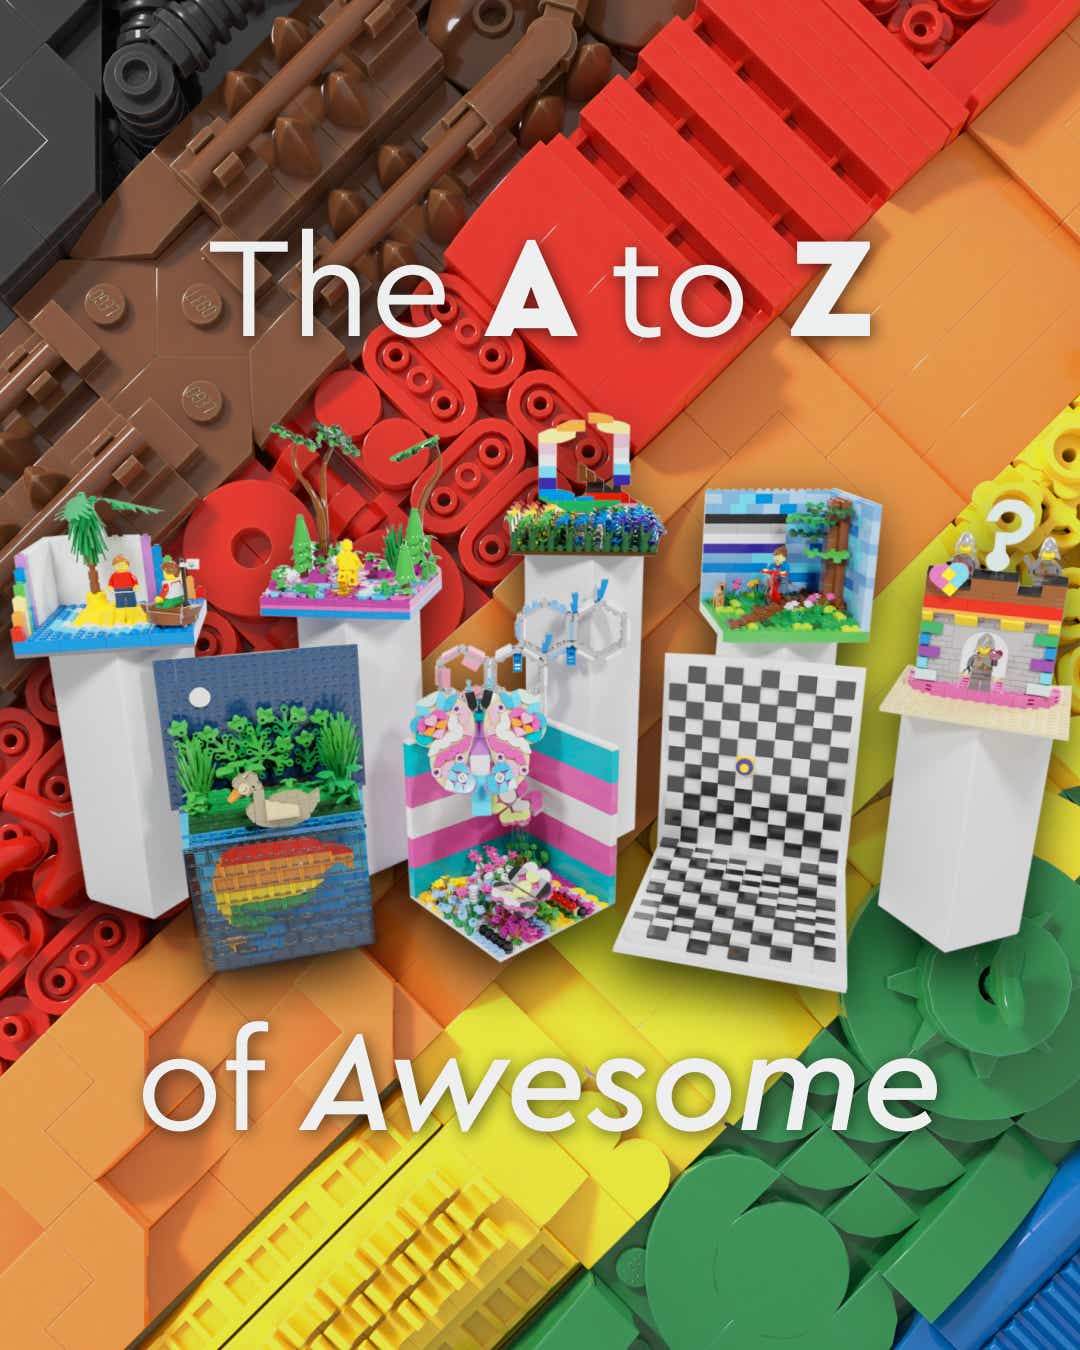 AZ of Awesome là một dự án truyền thông xã hội lấy cộng đồng làm trung tâm